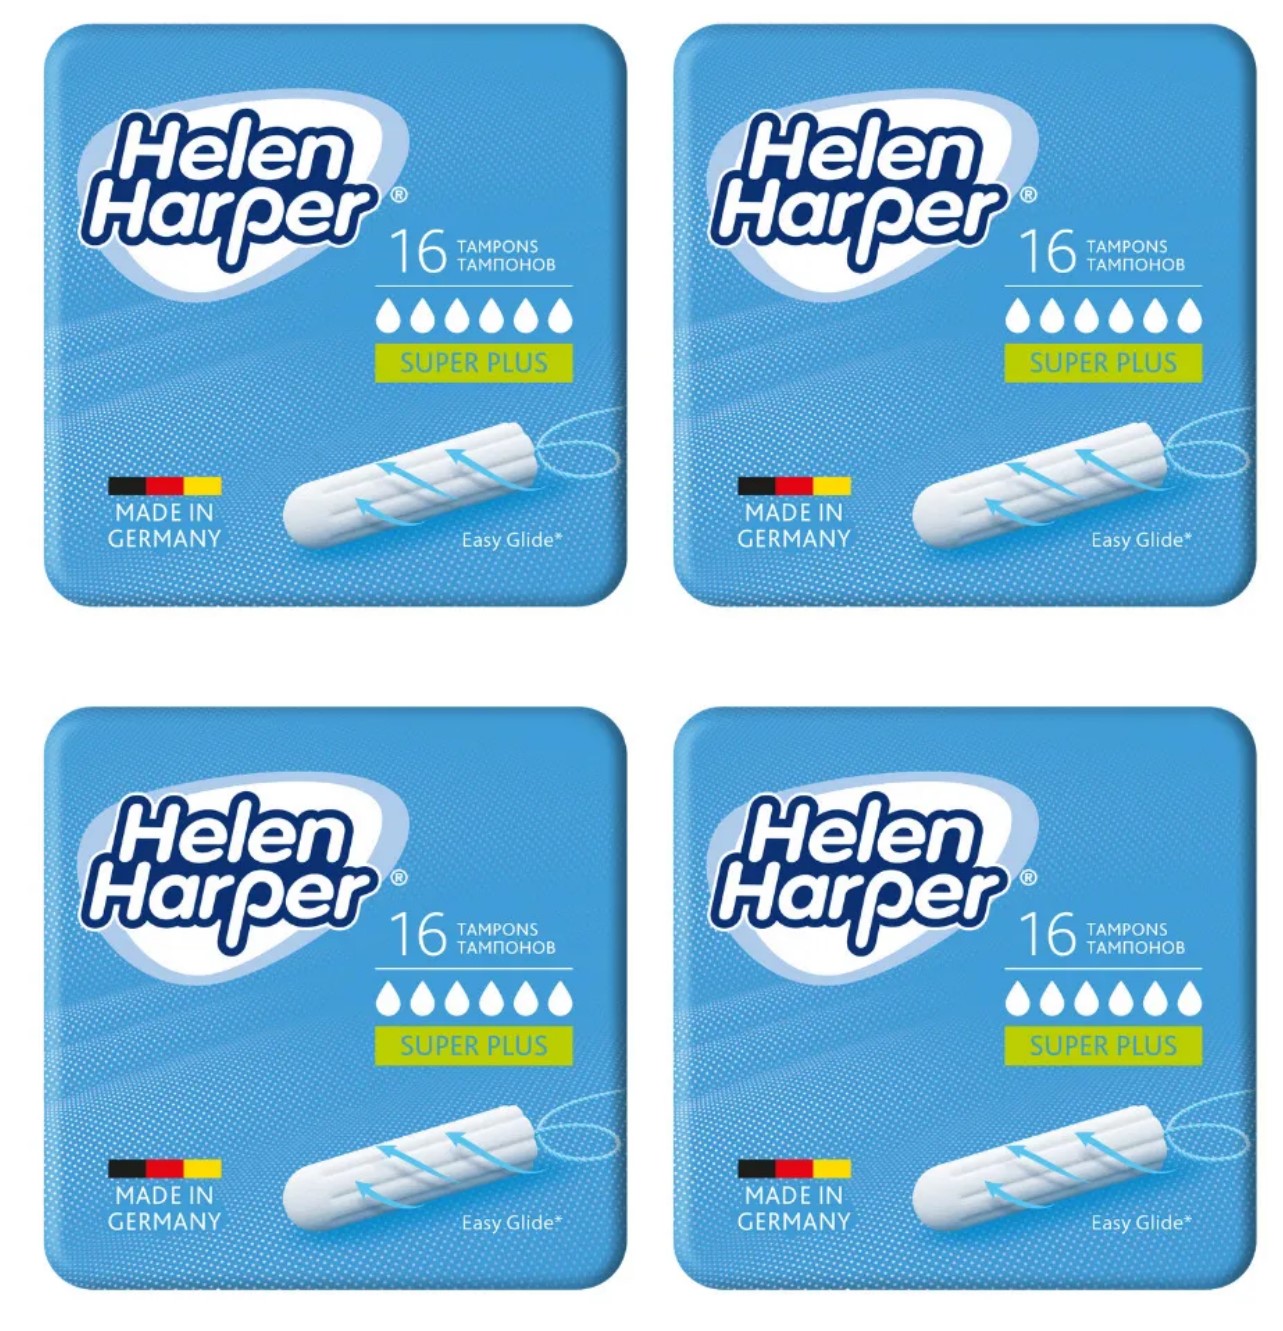 Тампоны Helen Harper Super Plus, 6 капель, 16 шт. х 4 уп.